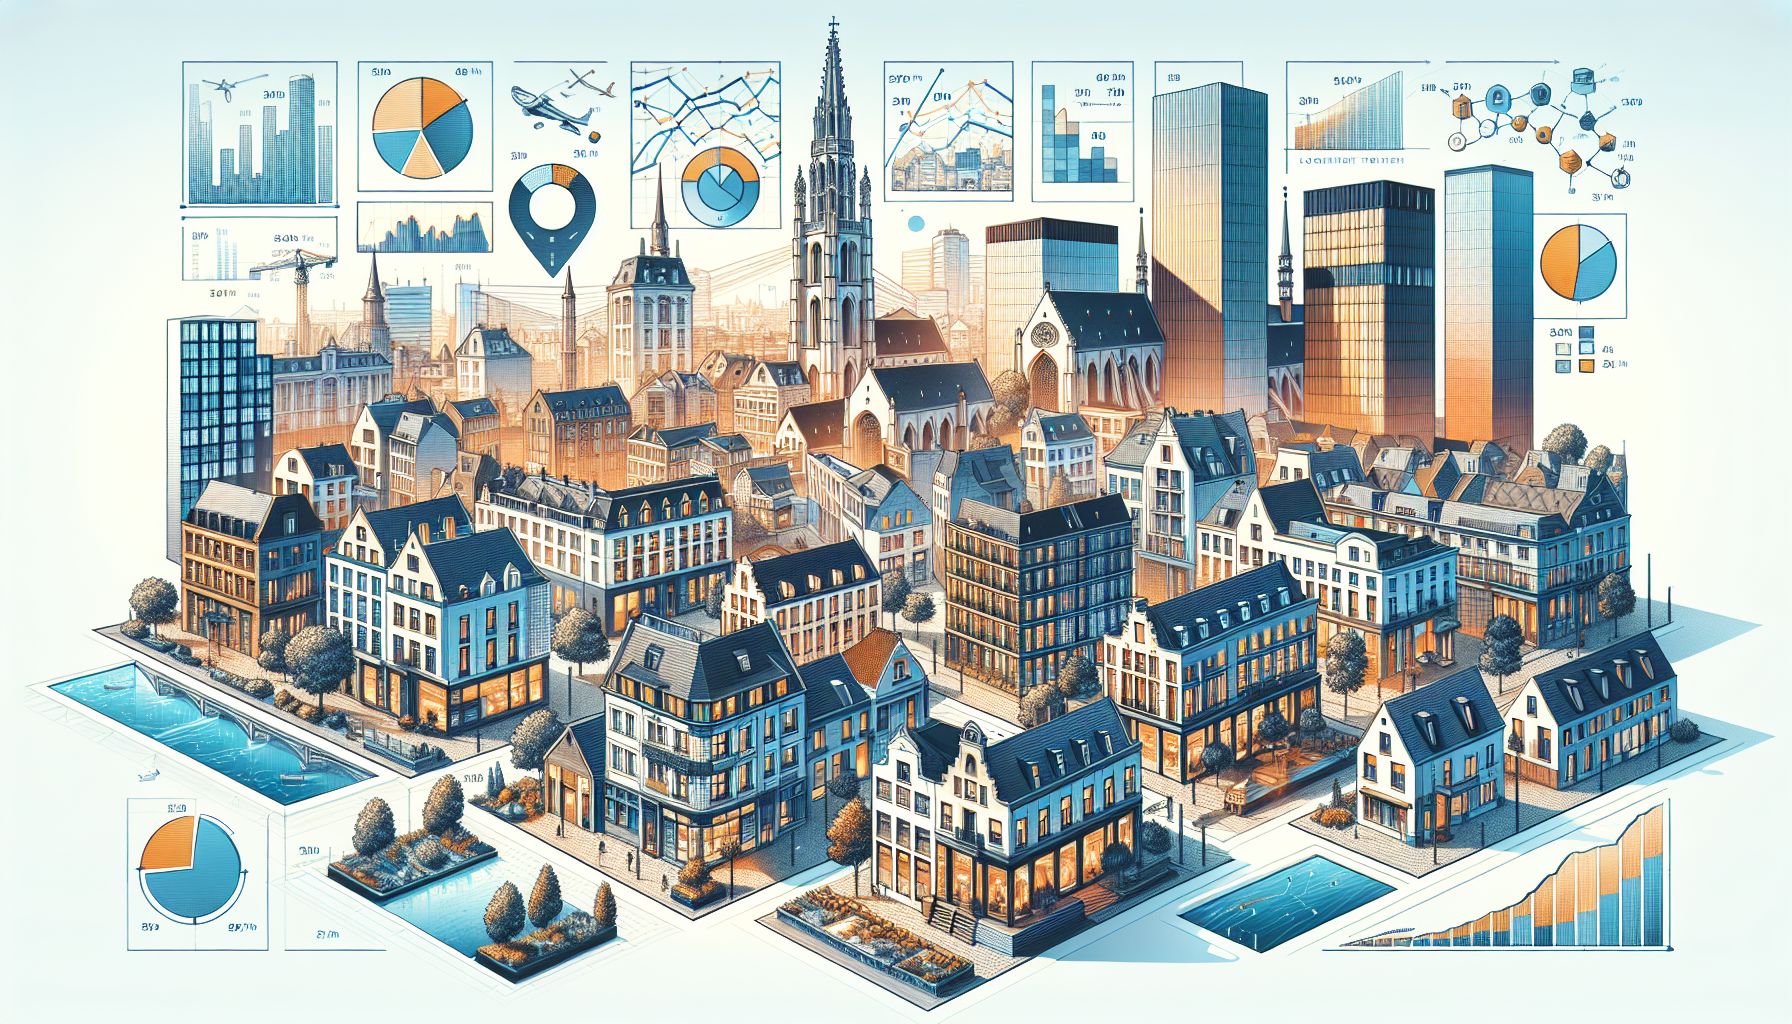 découvrez les tendances actuelles du marché de l'immobilier à bruxelles et les dernières évolutions du secteur immobilier dans la capitale belge.